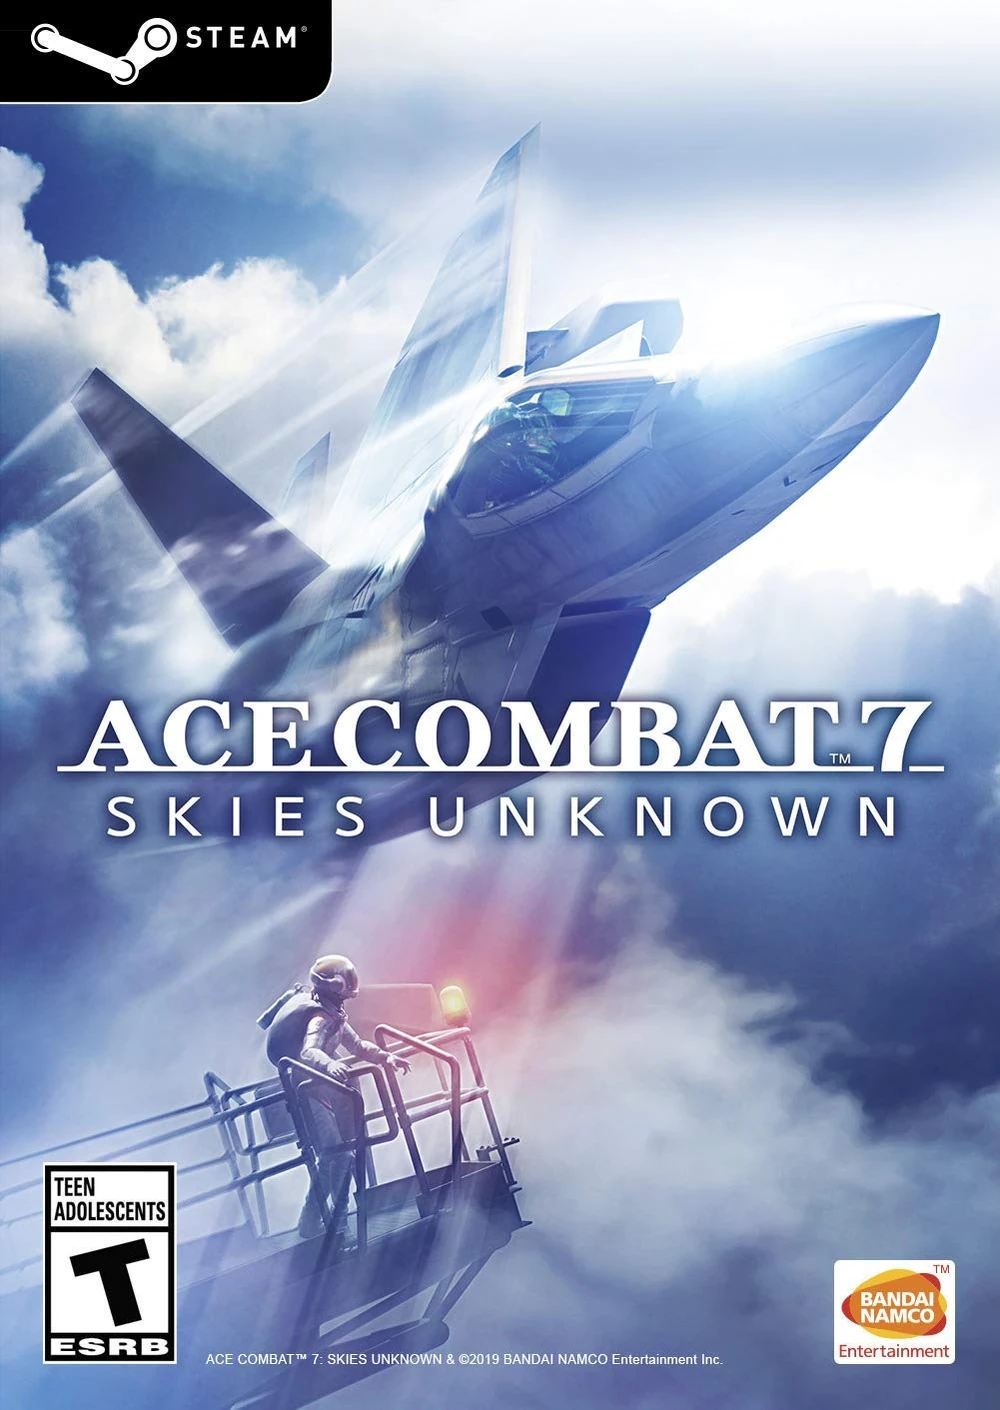 Ace Combat Infinity: jogo gratuito é lançado para PlayStation 3